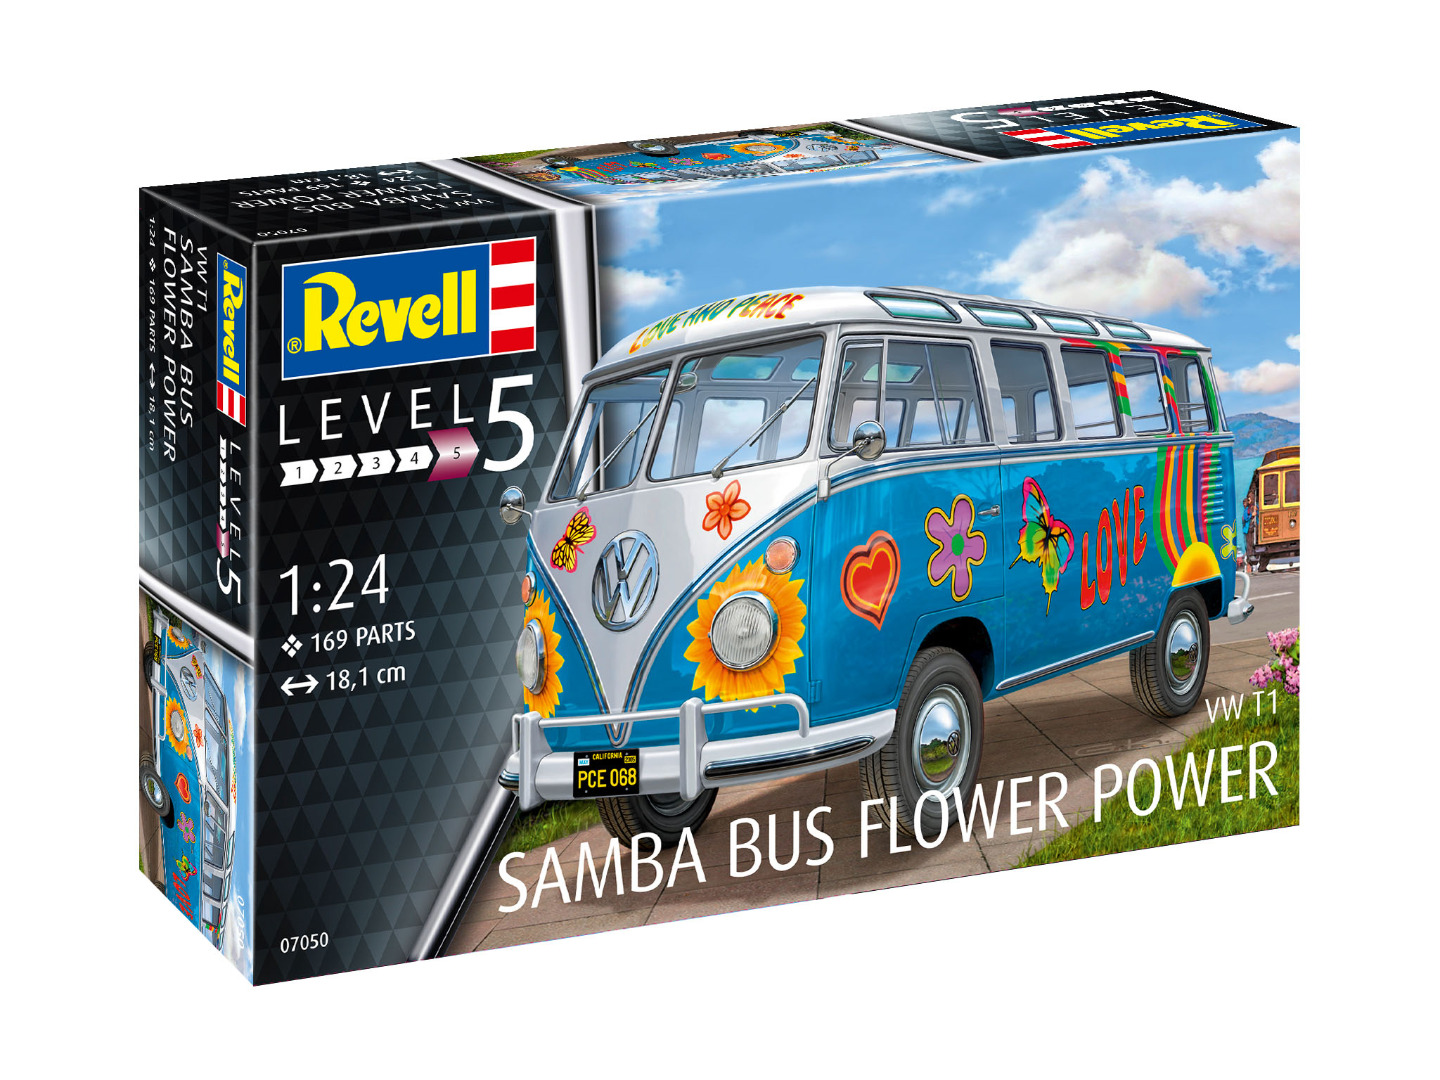 Revell Model Kit VW T1 Samba Bus Flower Power 1:24